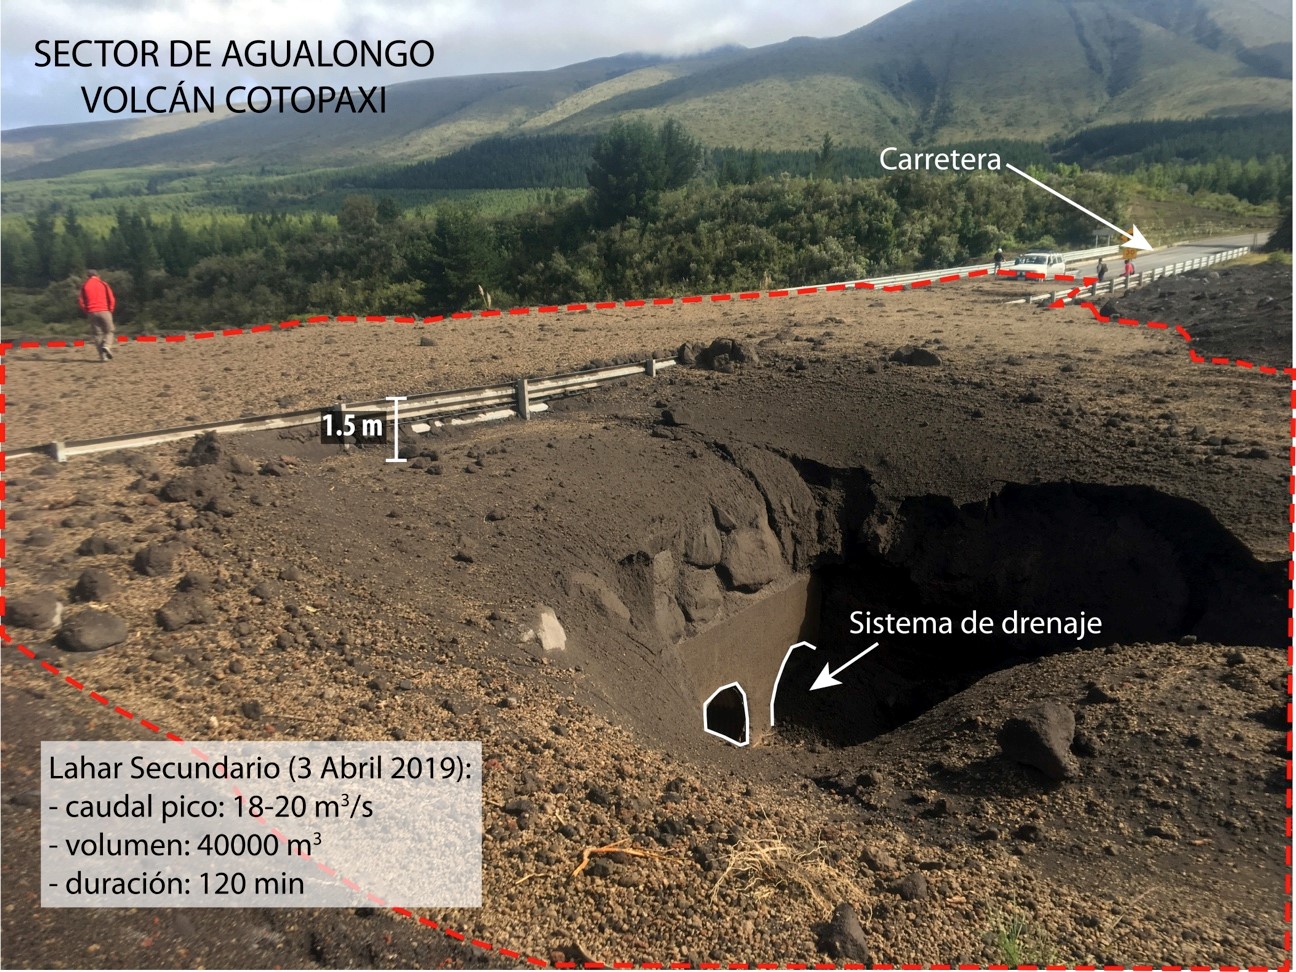 Nuevo lahar secundario del volcán Cotopaxi